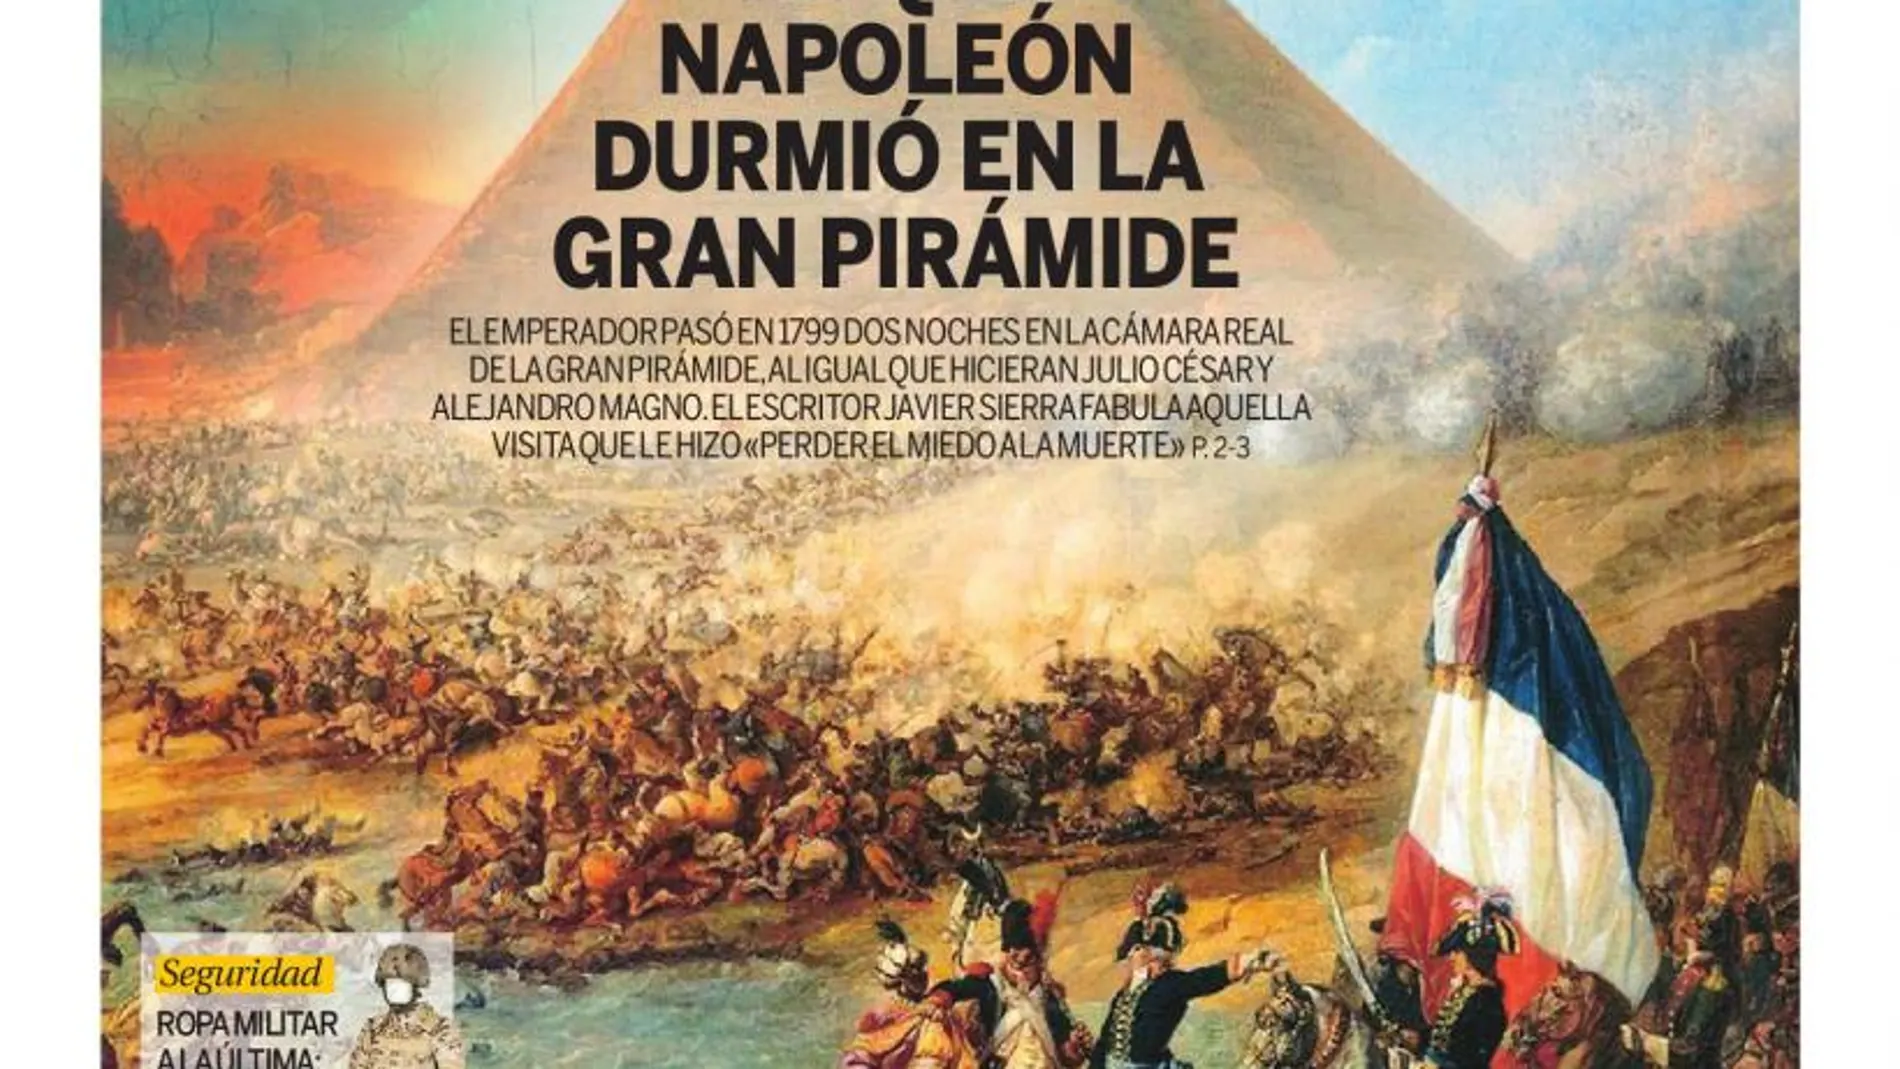 La noche en que Napoleón durmió en la gran pirámide